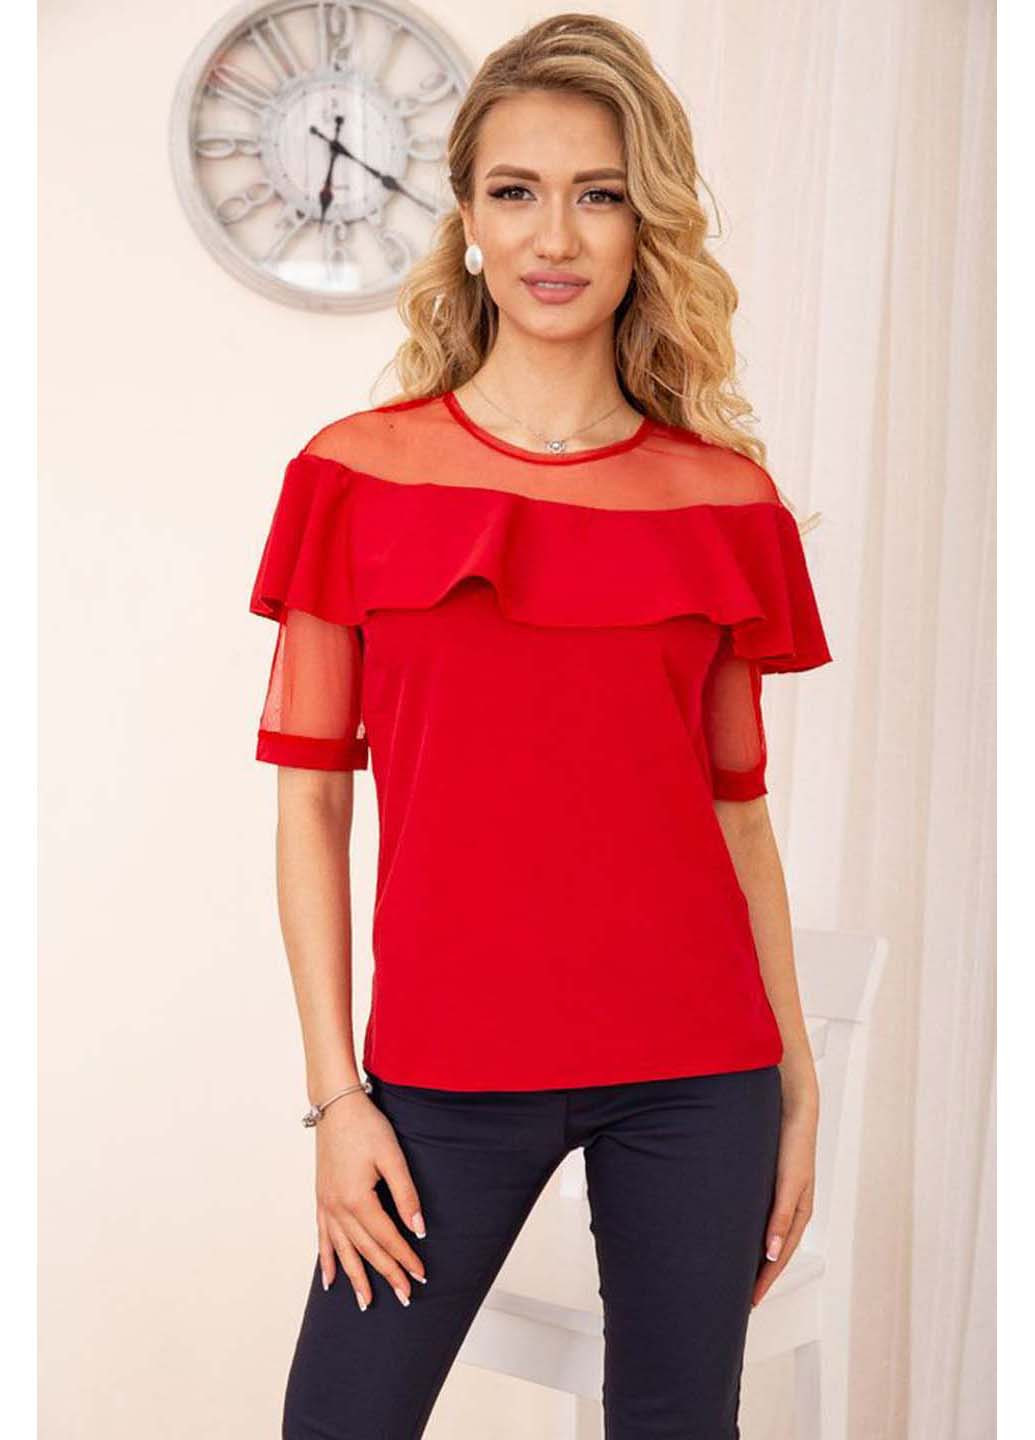 Красная демисезонная блуза Ager